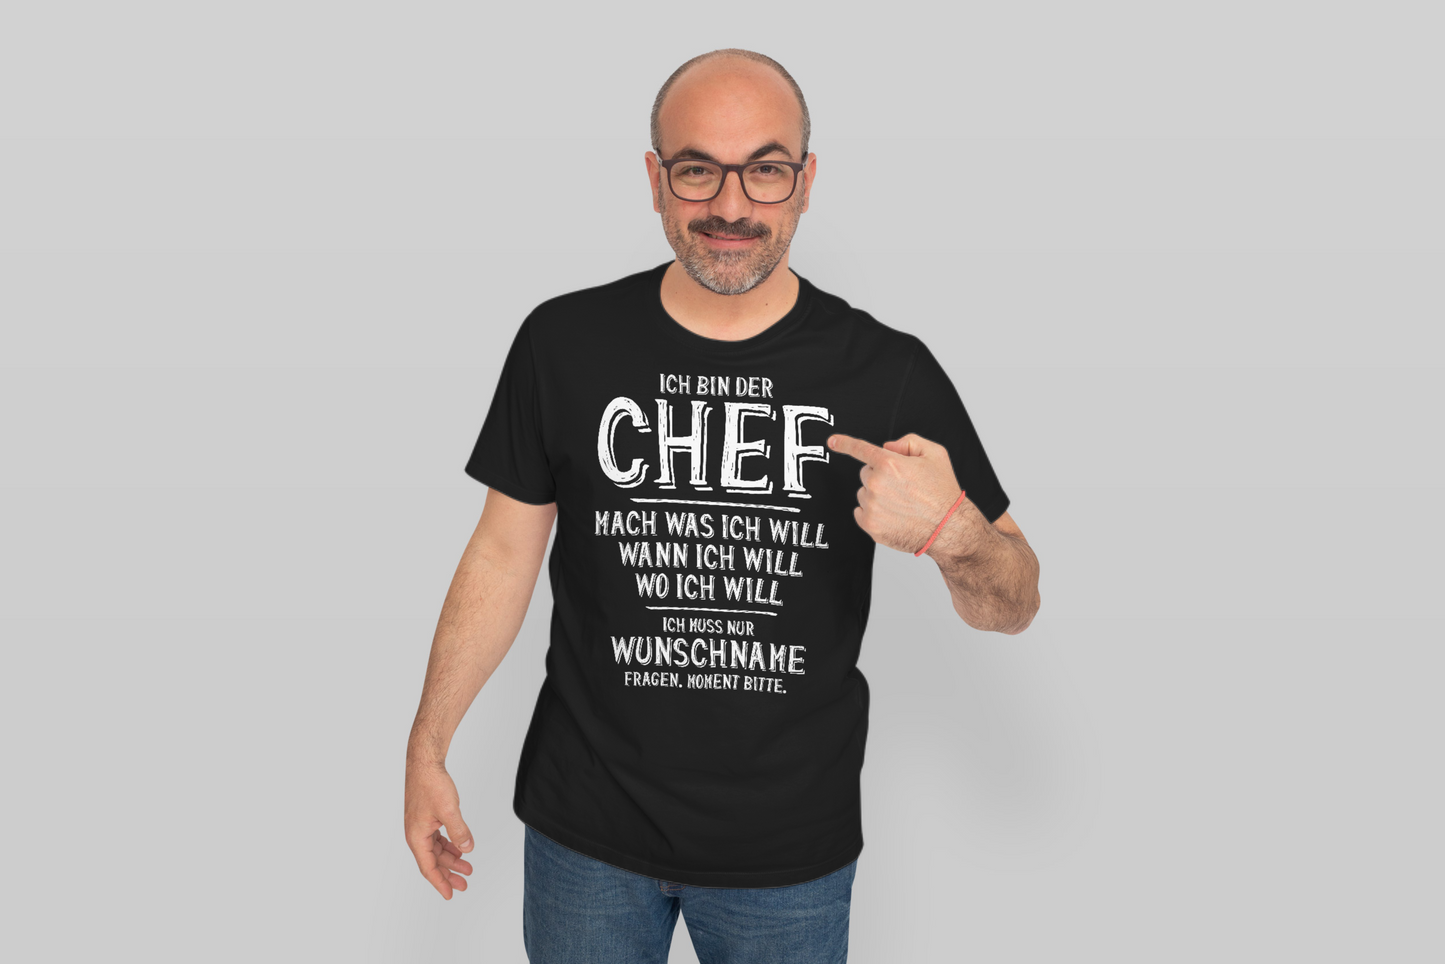 Personalisiertes T-Shirt Ich Bin der Chef Mach was ich Will, ich muss nur Wunschname Fragen, Geschenk Papa Vatertag Valentinstag